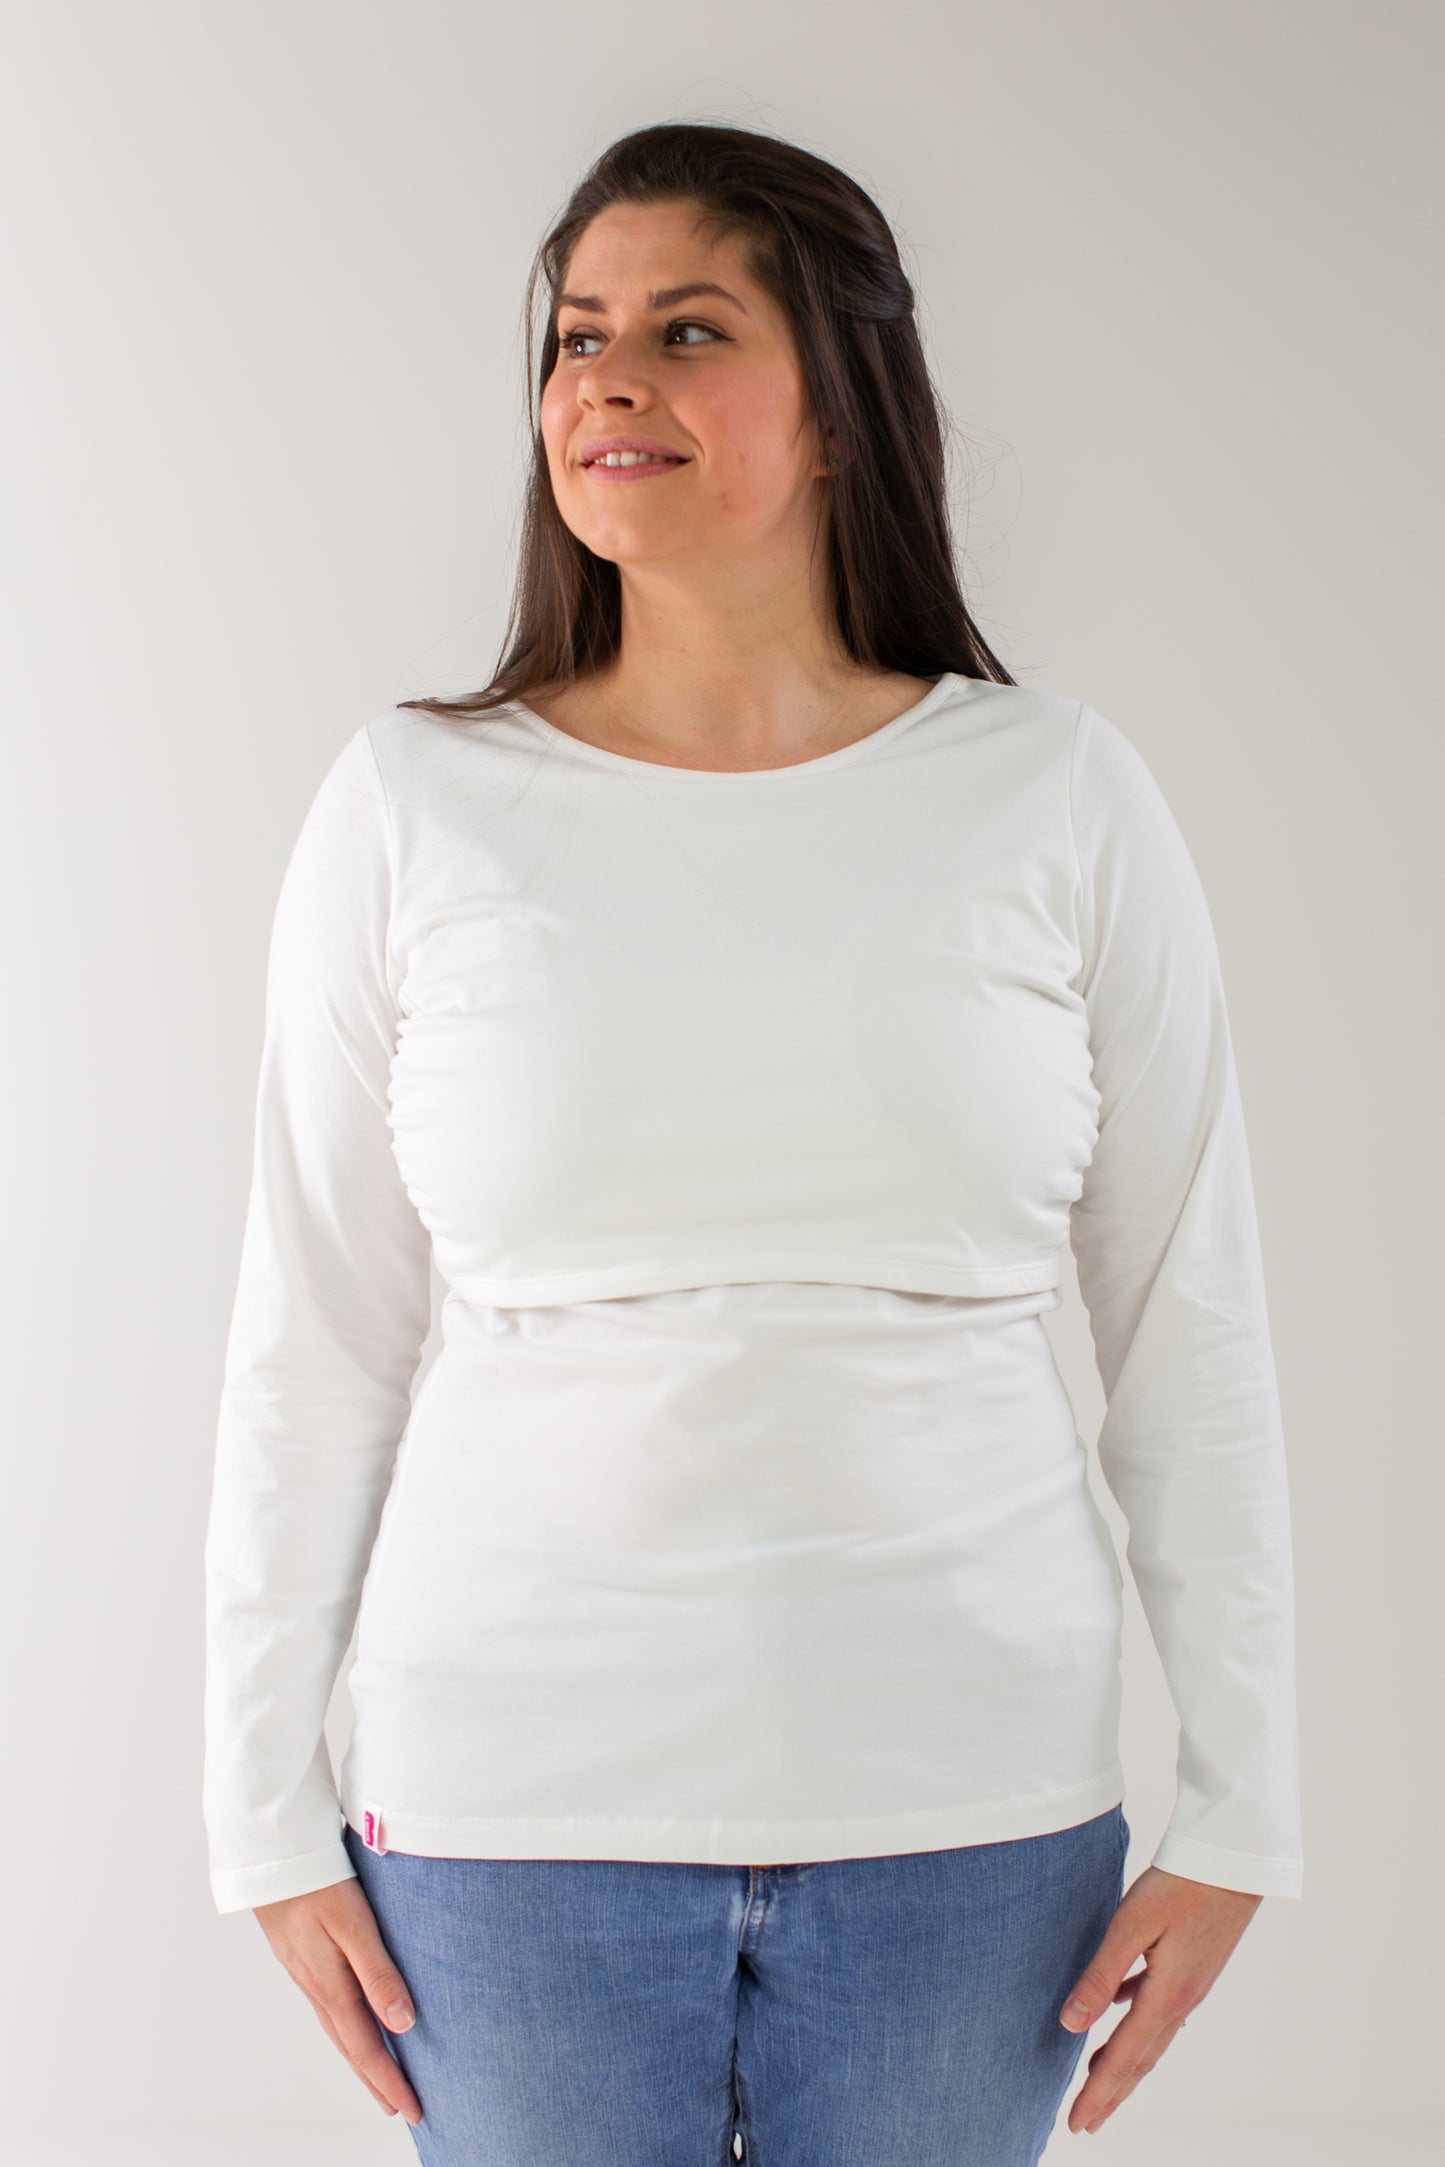 Organic Long Sleeves Breastfeeding Top in White